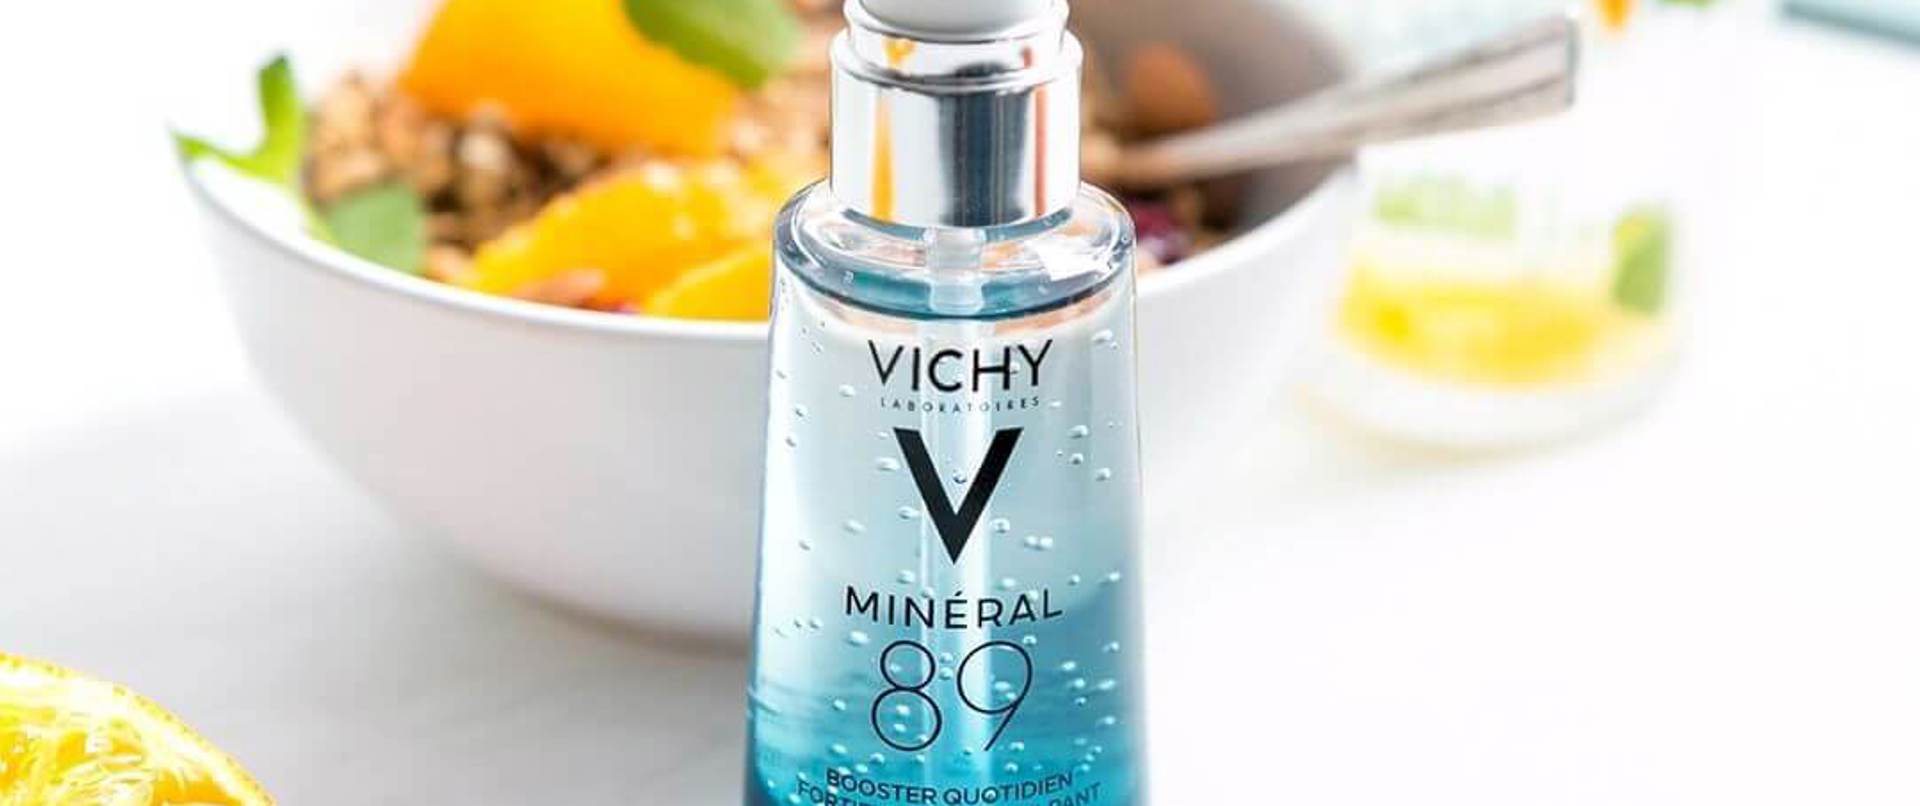 Makyajın İlk Adımı: Vichy Mineral 89 ile Cilt Bakımı